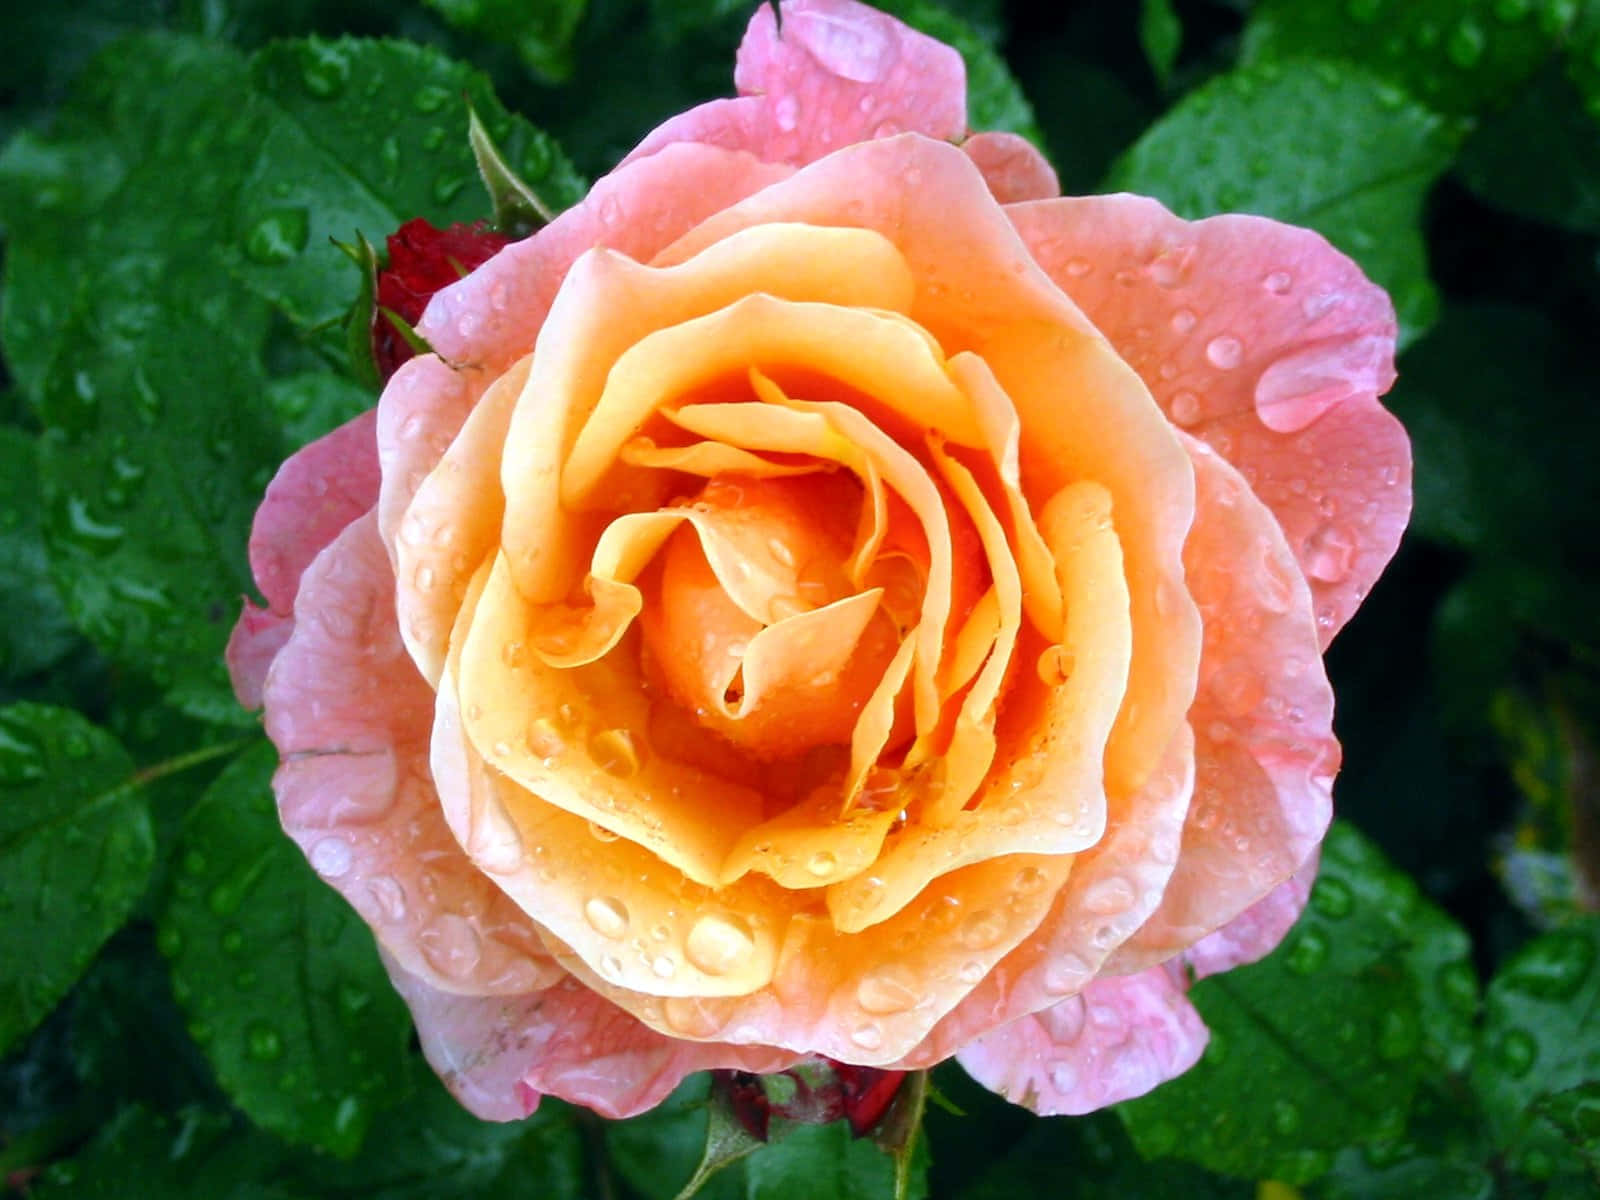 Ensmuk Pink Rose Med Dugdråber På Kronbladene.